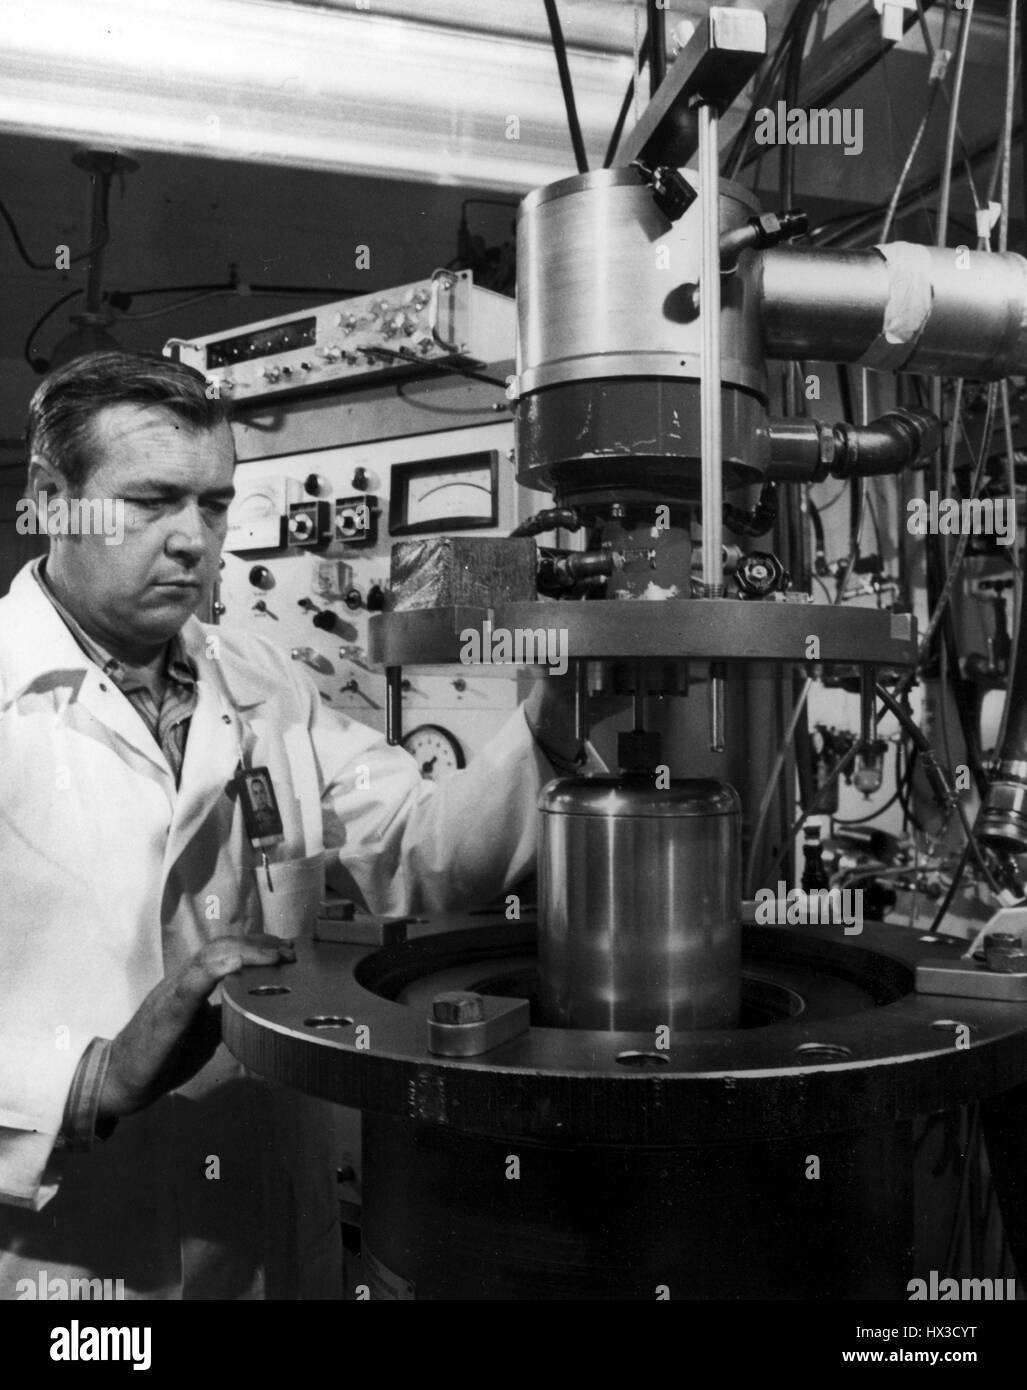 Un hombre en una bata de laboratorio interactúa con un líquido centrífuga zonal que fue desarrollado por la Comisión de Energía Atómica de Estados Unidos en Oak Ridge National Laboratory, Oak Ridge, Tennessee, 1972. Imagen cortesía del Departamento de Energía de Estados Unidos. Foto de stock